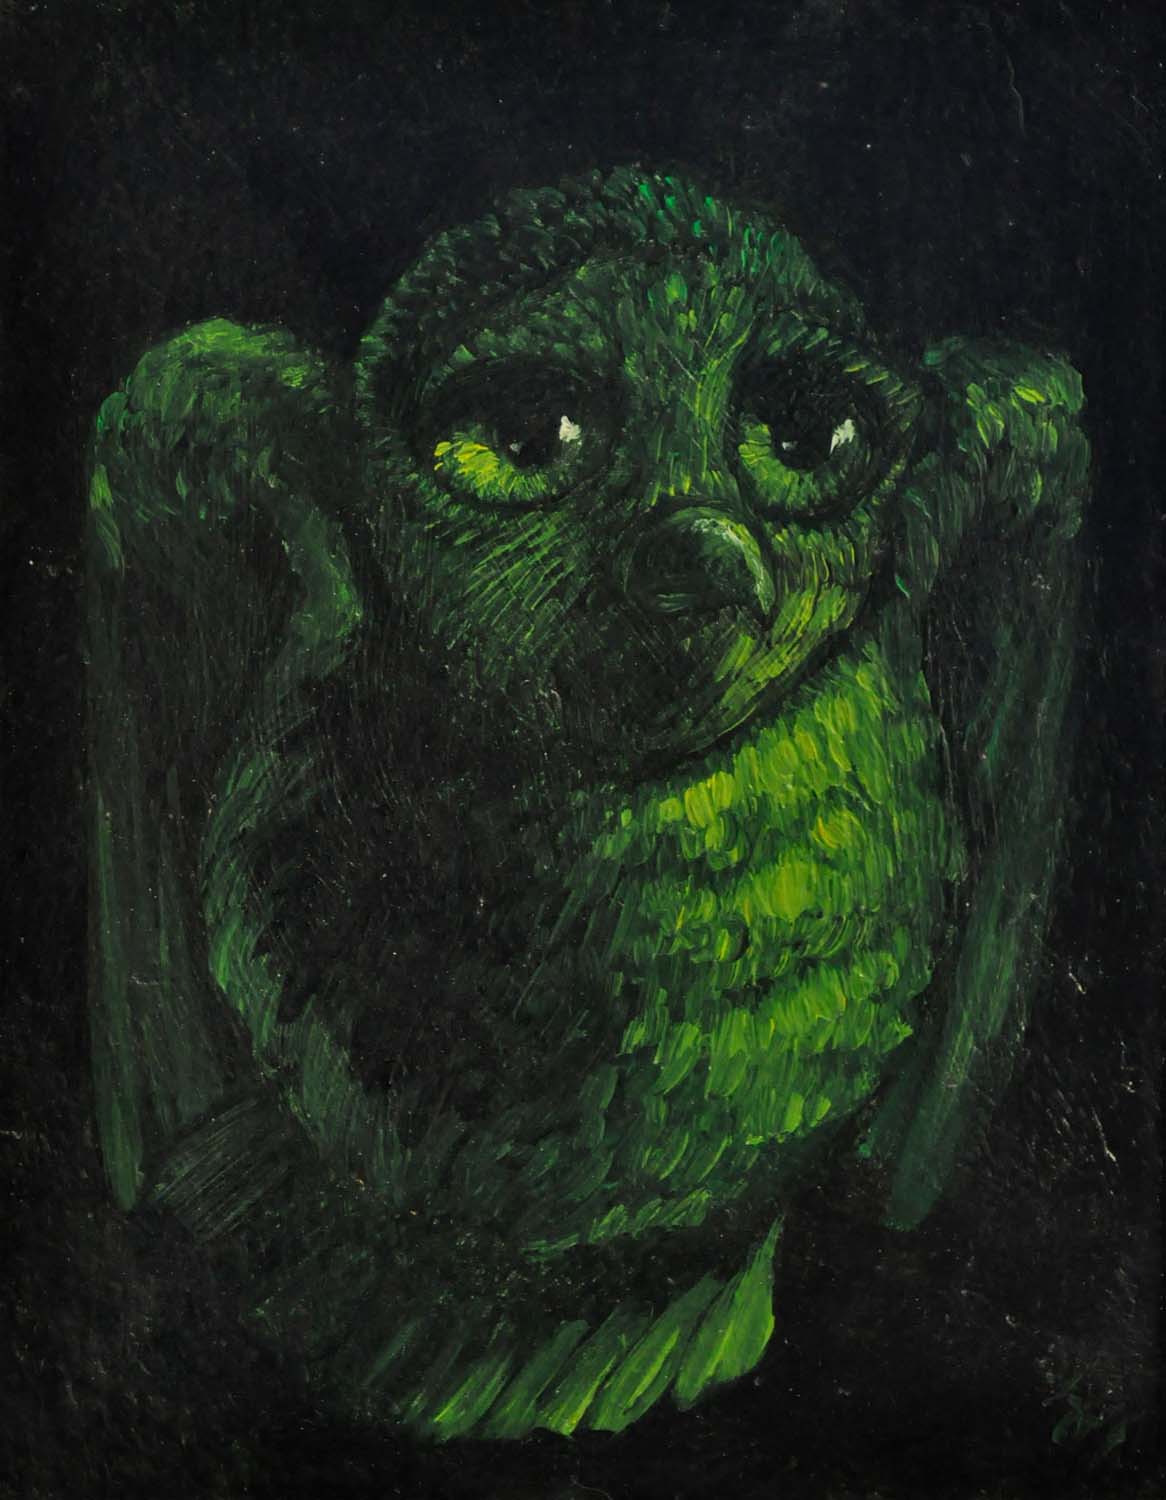 Chouette verte, qui prend son envol, les ailes commençant à peine à se déplier. Elle a le regard à la fois las et alerte, les paupières un peu baissées, comme le regard d'Hegel sur son portrait peint par Jakob Schlesinger, qui semble surpris par quelqu'un qui l'appelle.